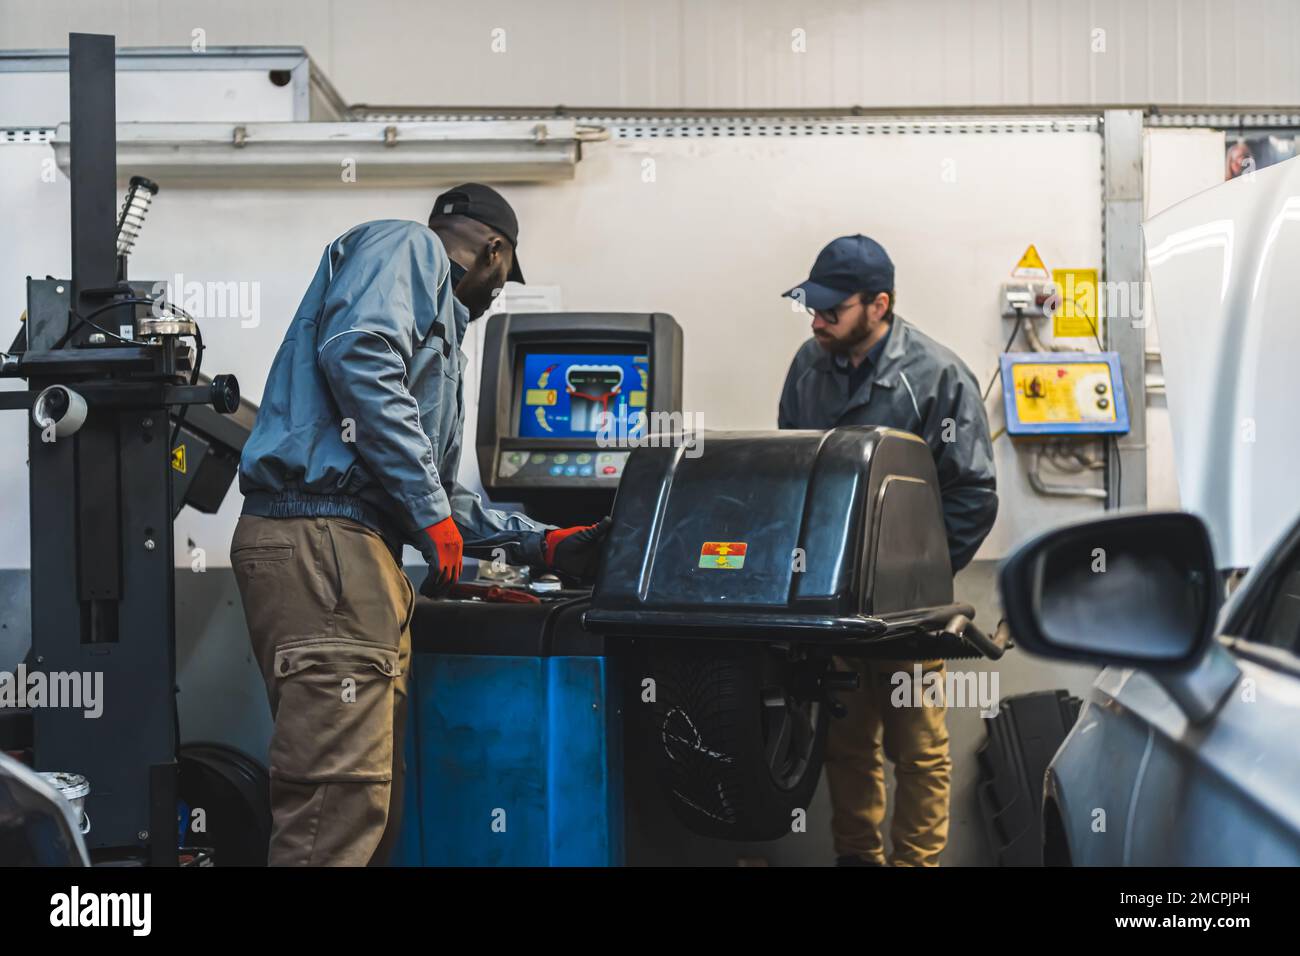 Ingegneri che lavorano in un moderno negozio di riparazione auto utilizzando attrezzature all'avanguardia. Foto di alta qualità Foto Stock